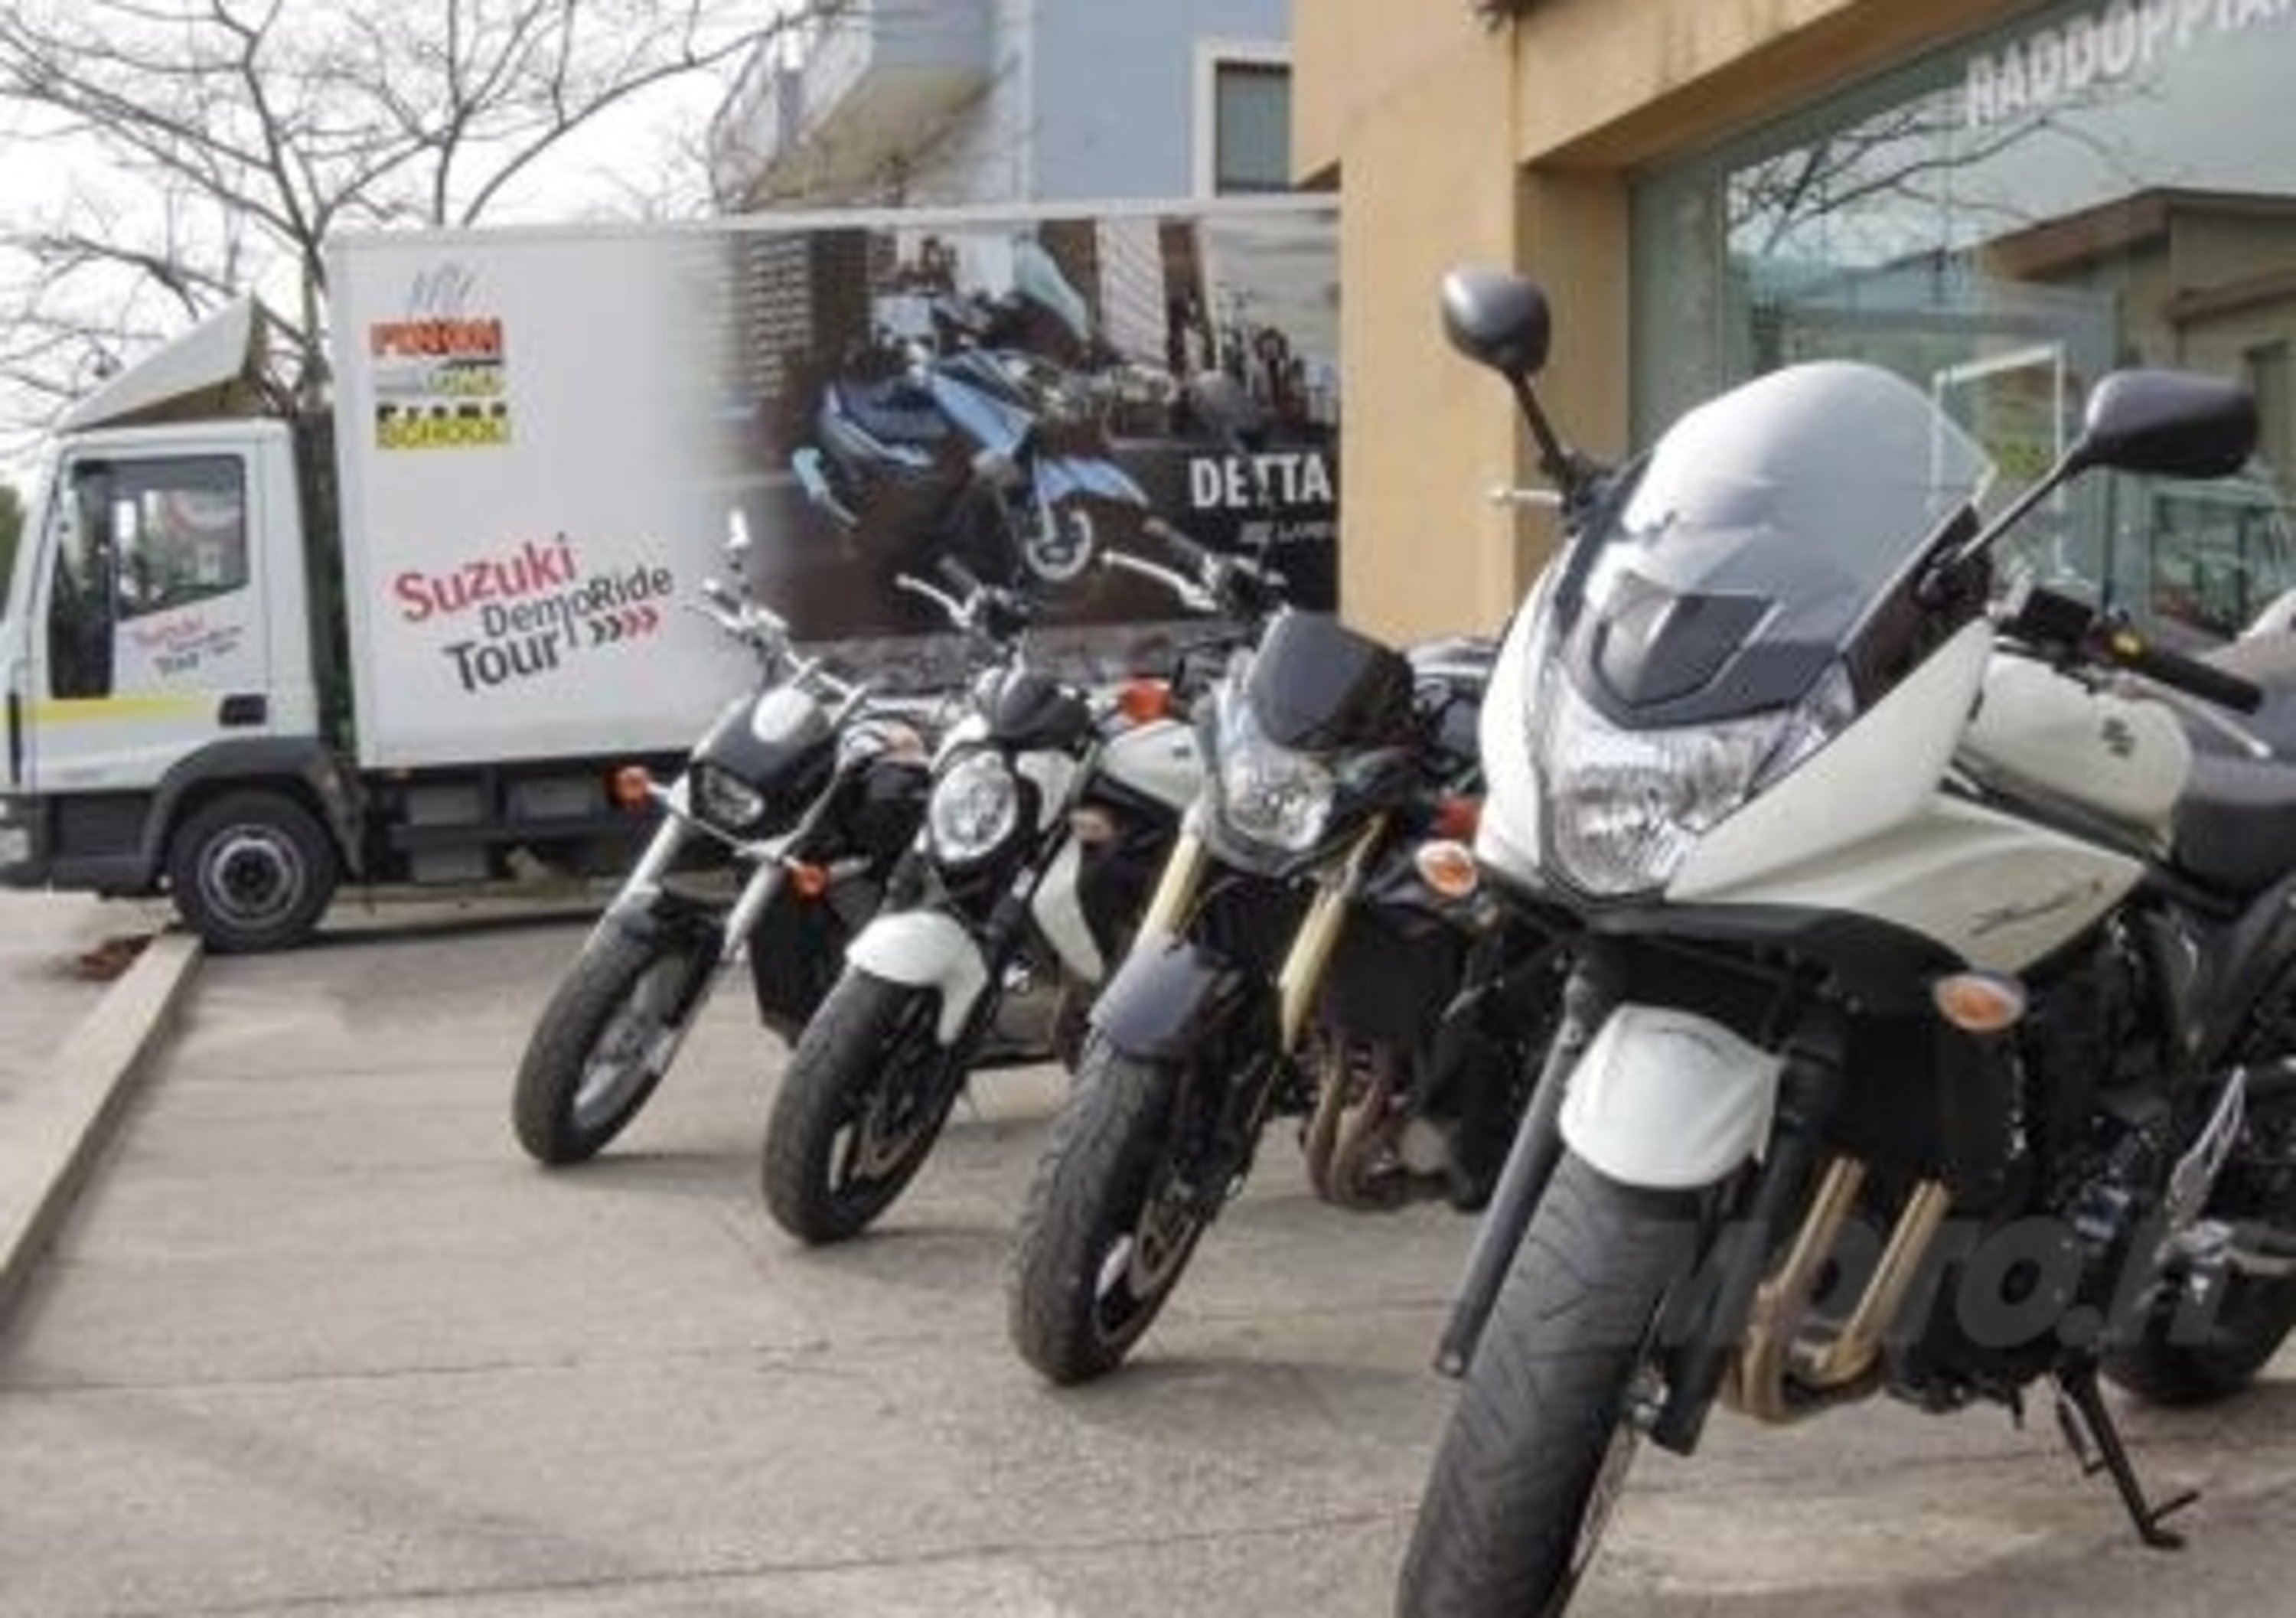 Suzuki Demo Ride Tour: le tappe del 11 e 12 maggio